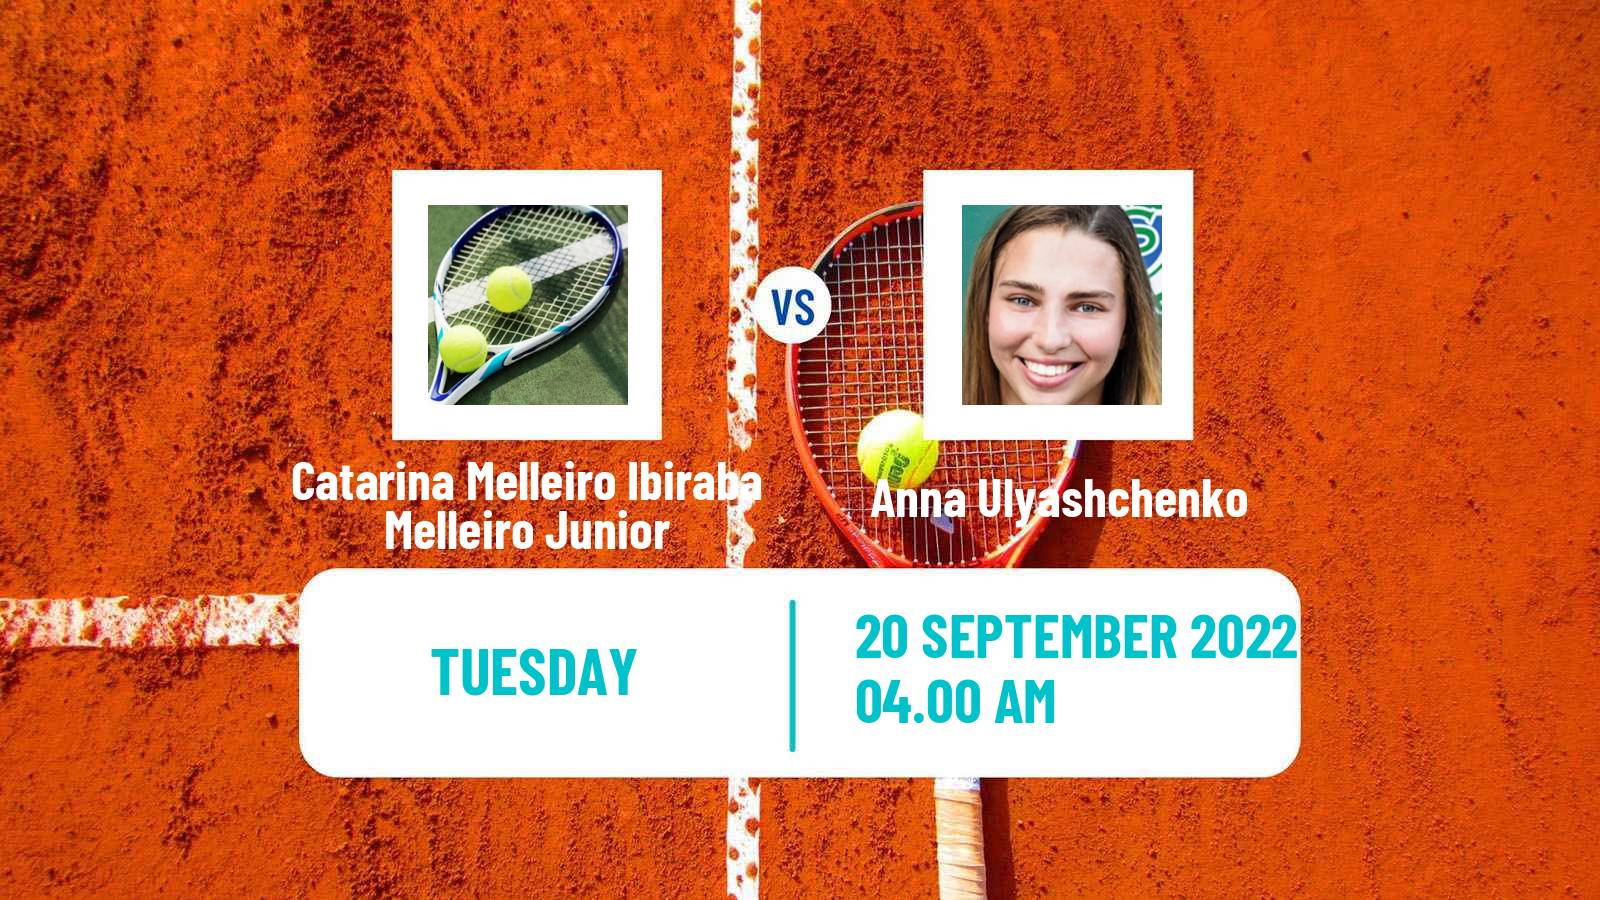 Tennis ITF Tournaments Catarina Melleiro Ibiraba Melleiro Junior - Anna Ulyashchenko